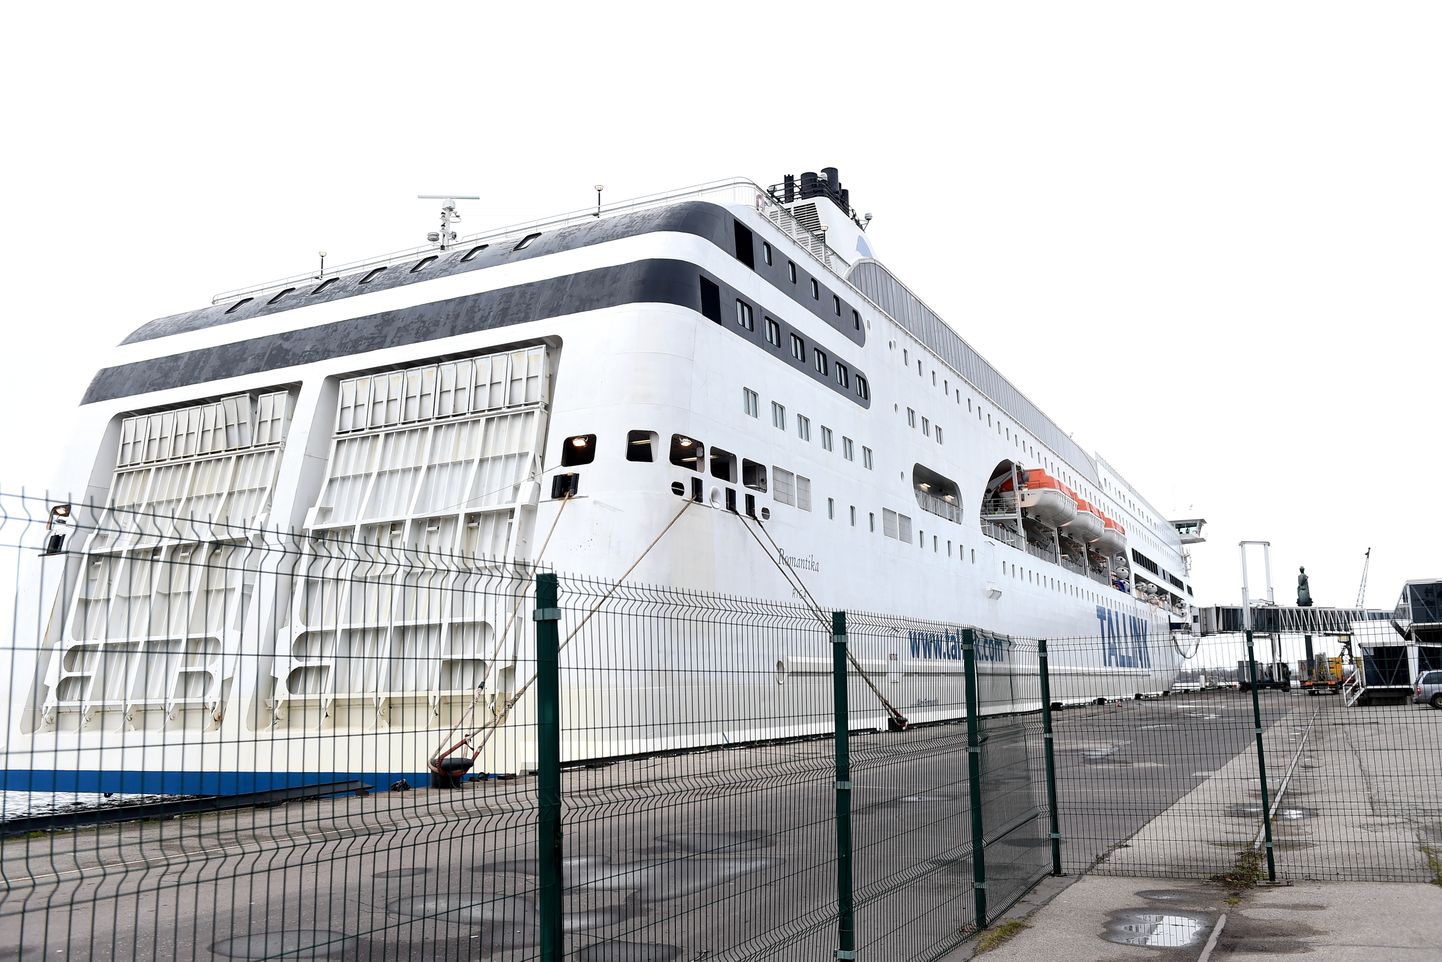 Kruīza prāmis "Tallink Romantika" Rīgas Pasažieru ostā